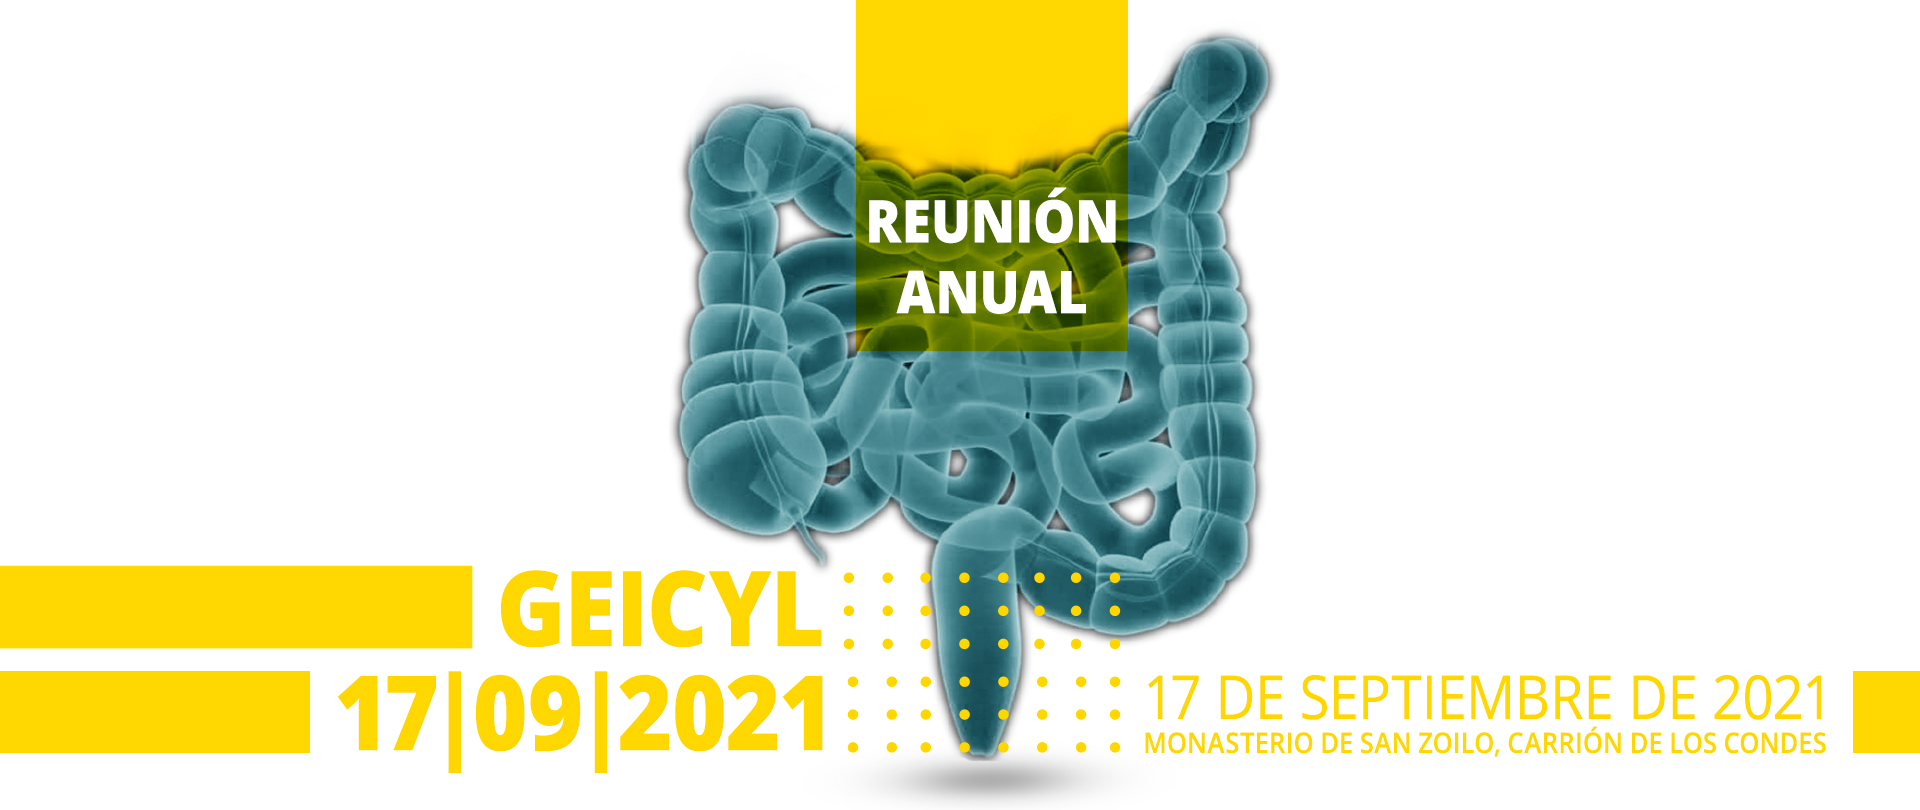 Reunión Anual Geicyl 2021